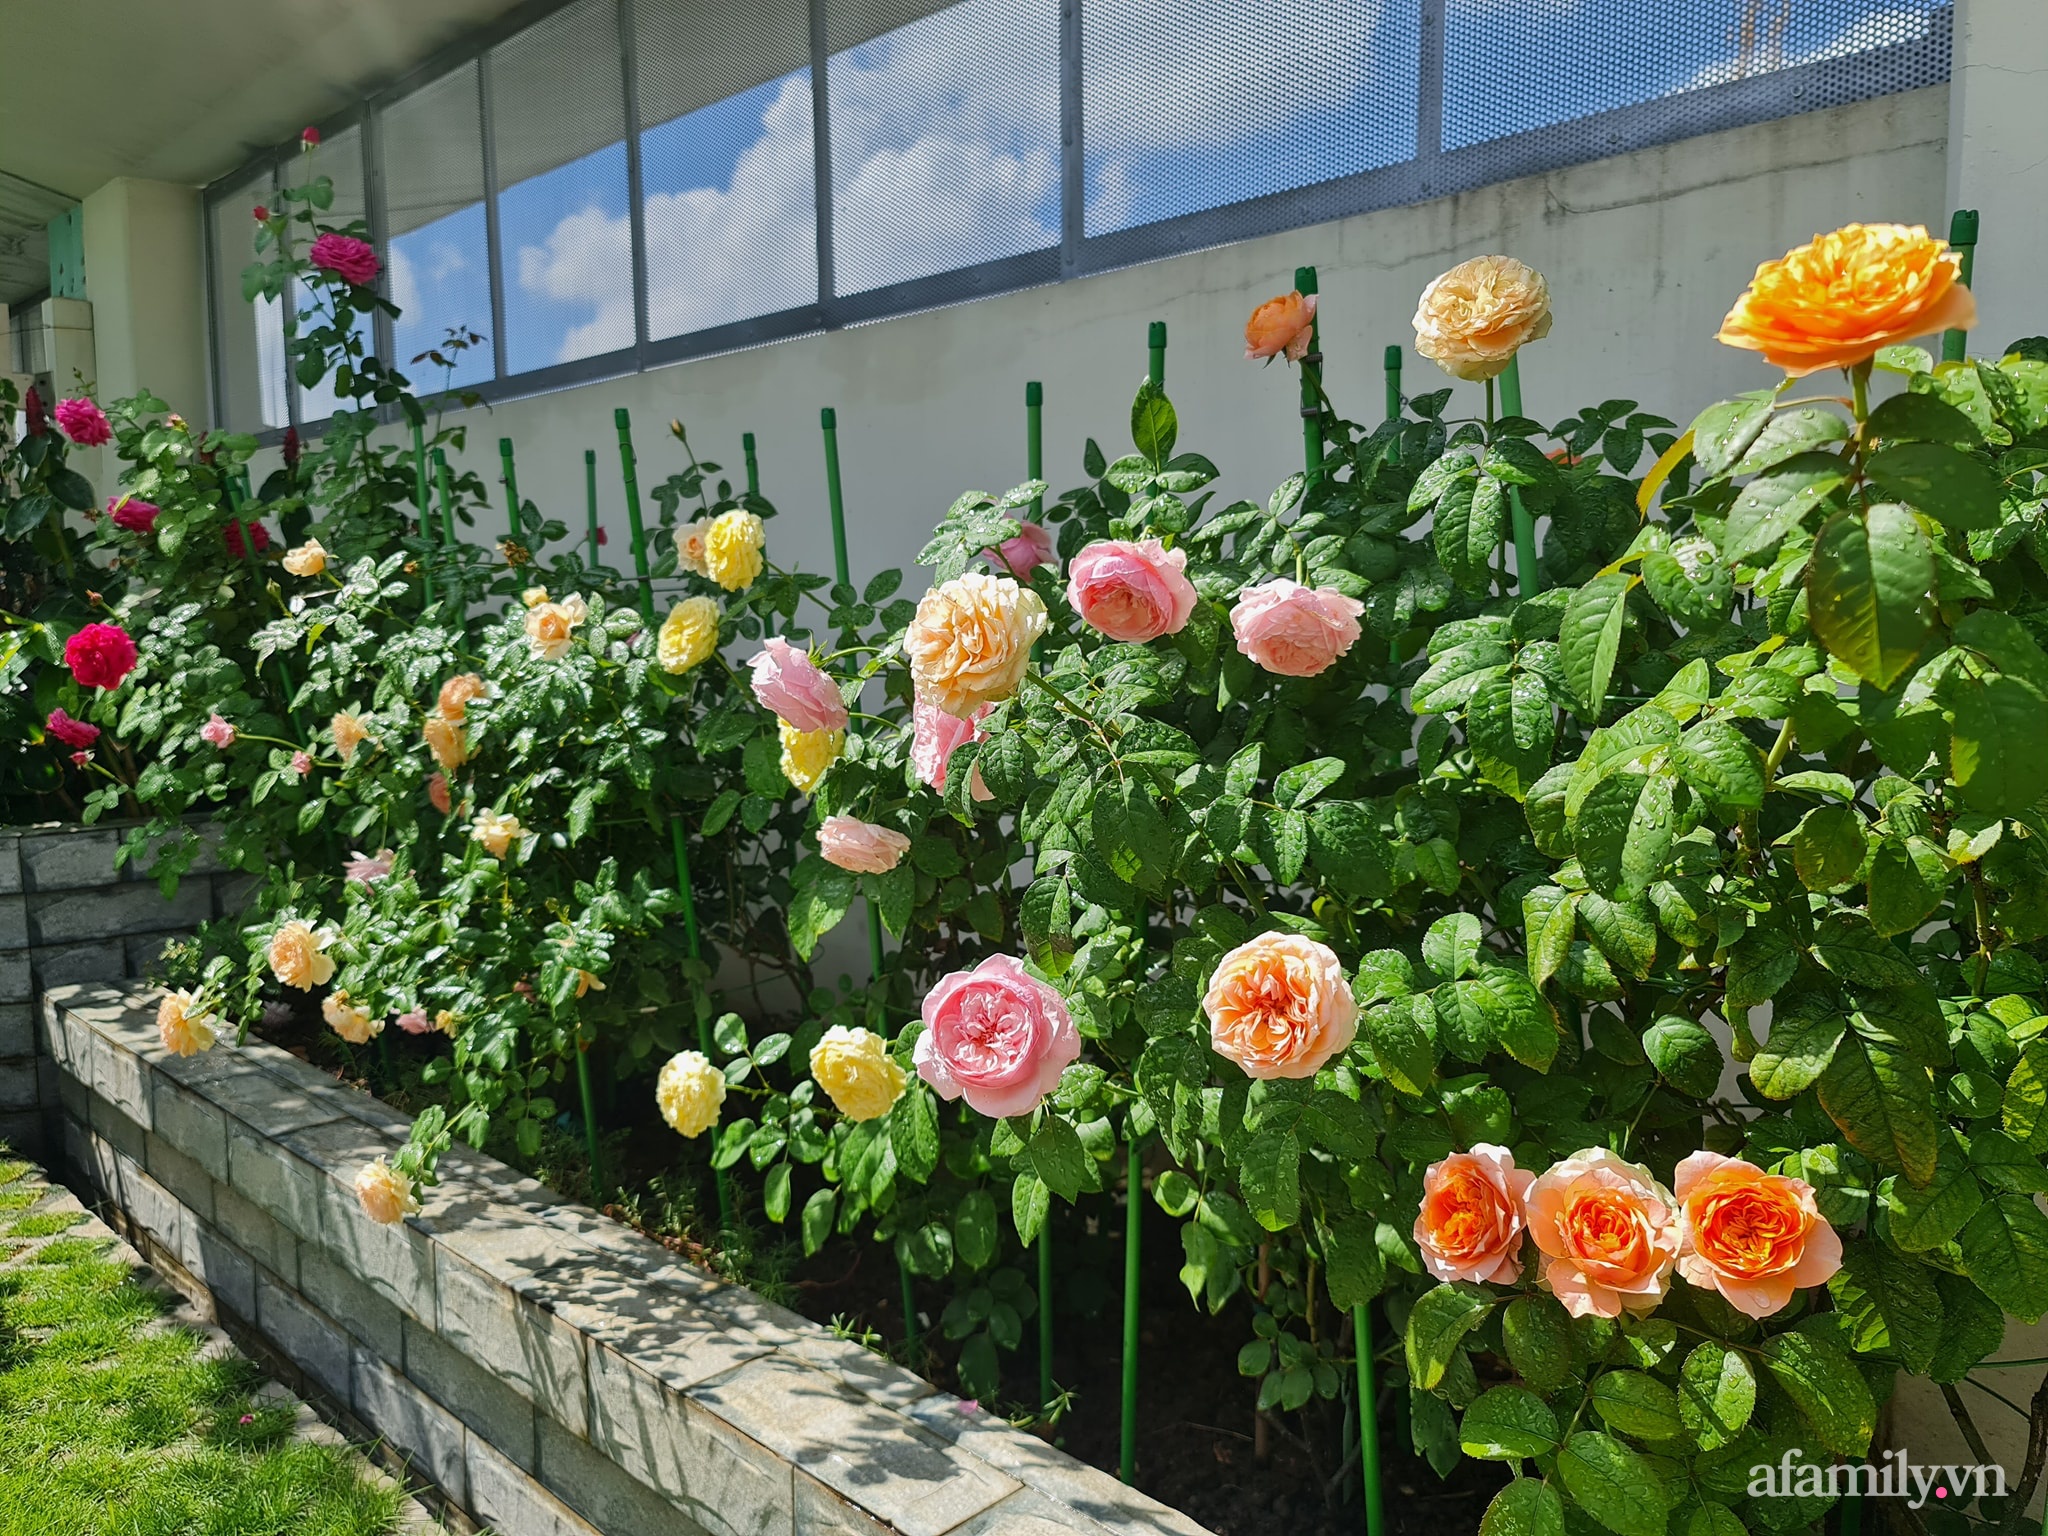 Đắm say trước vẻ đẹp ngọt lịm tim của vườn hồng rực rỡ trên sân thượng ở Bình Dương - Ảnh 3.